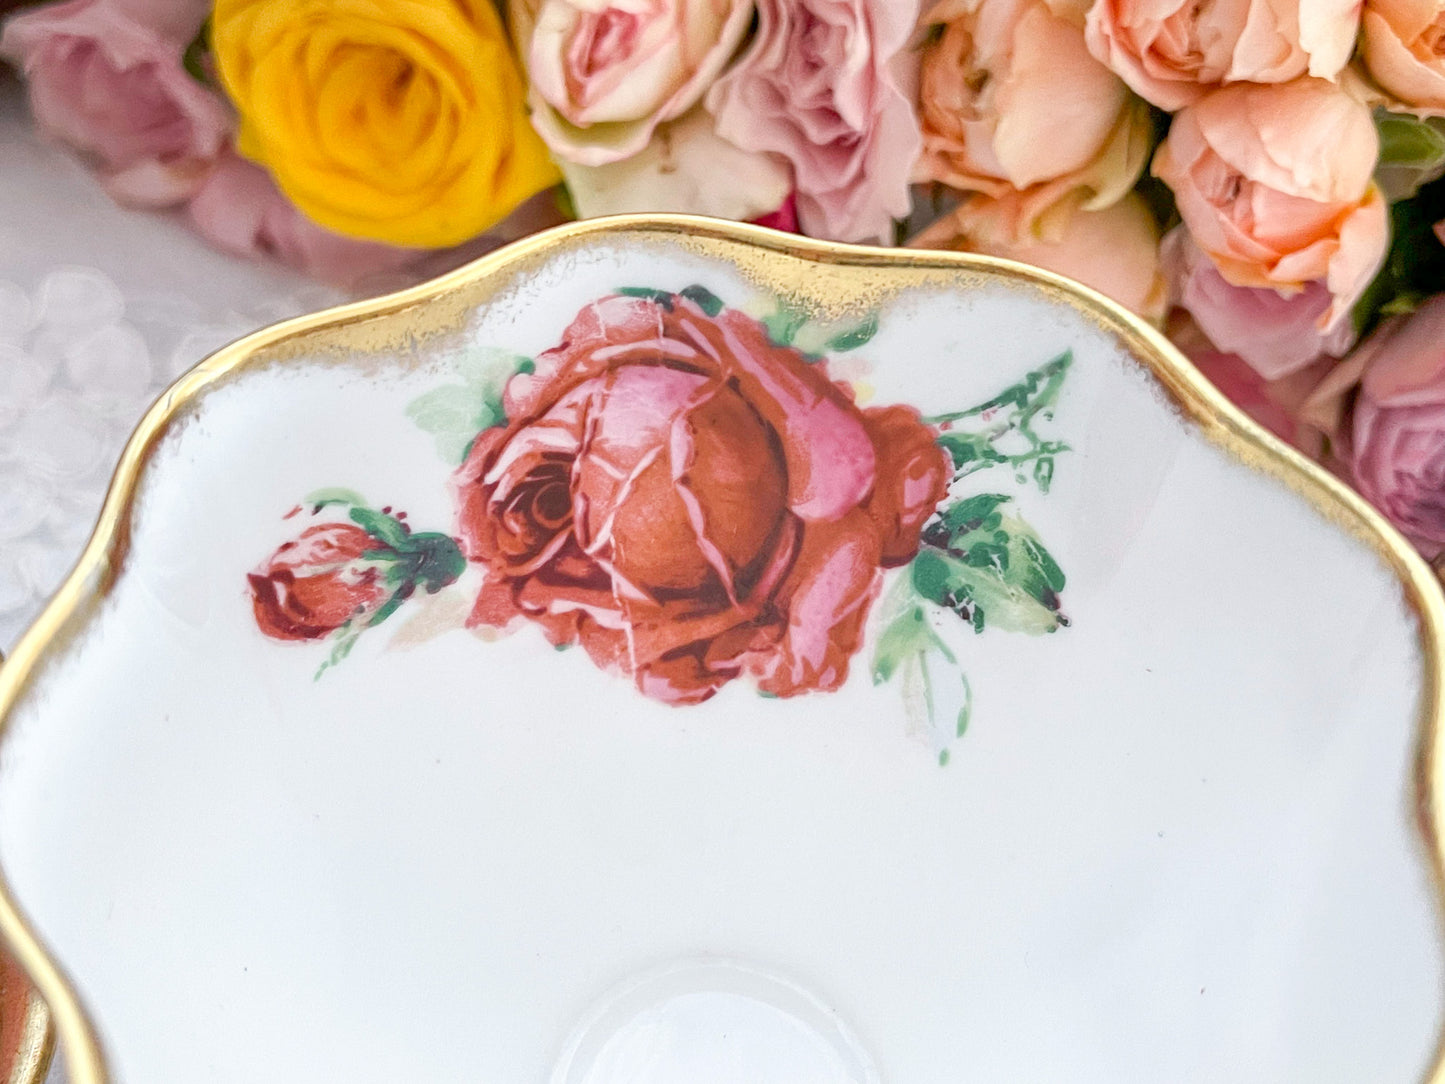 クイーンアンの大輪のバラと豪華な金彩のティーカップ&ソーサーです。とても豪華なアイテムでテーブルが華やかになります。Rose Antiquesはコールポートをはじめ英国アンティーク磁器、ヴィンテージ磁器をご紹介しています。